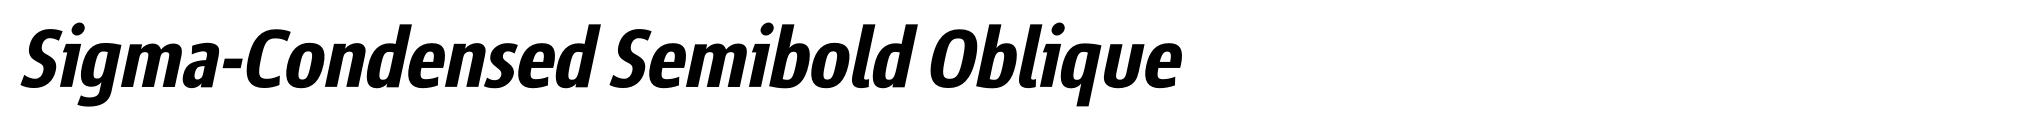 Sigma-Condensed Semibold Oblique image